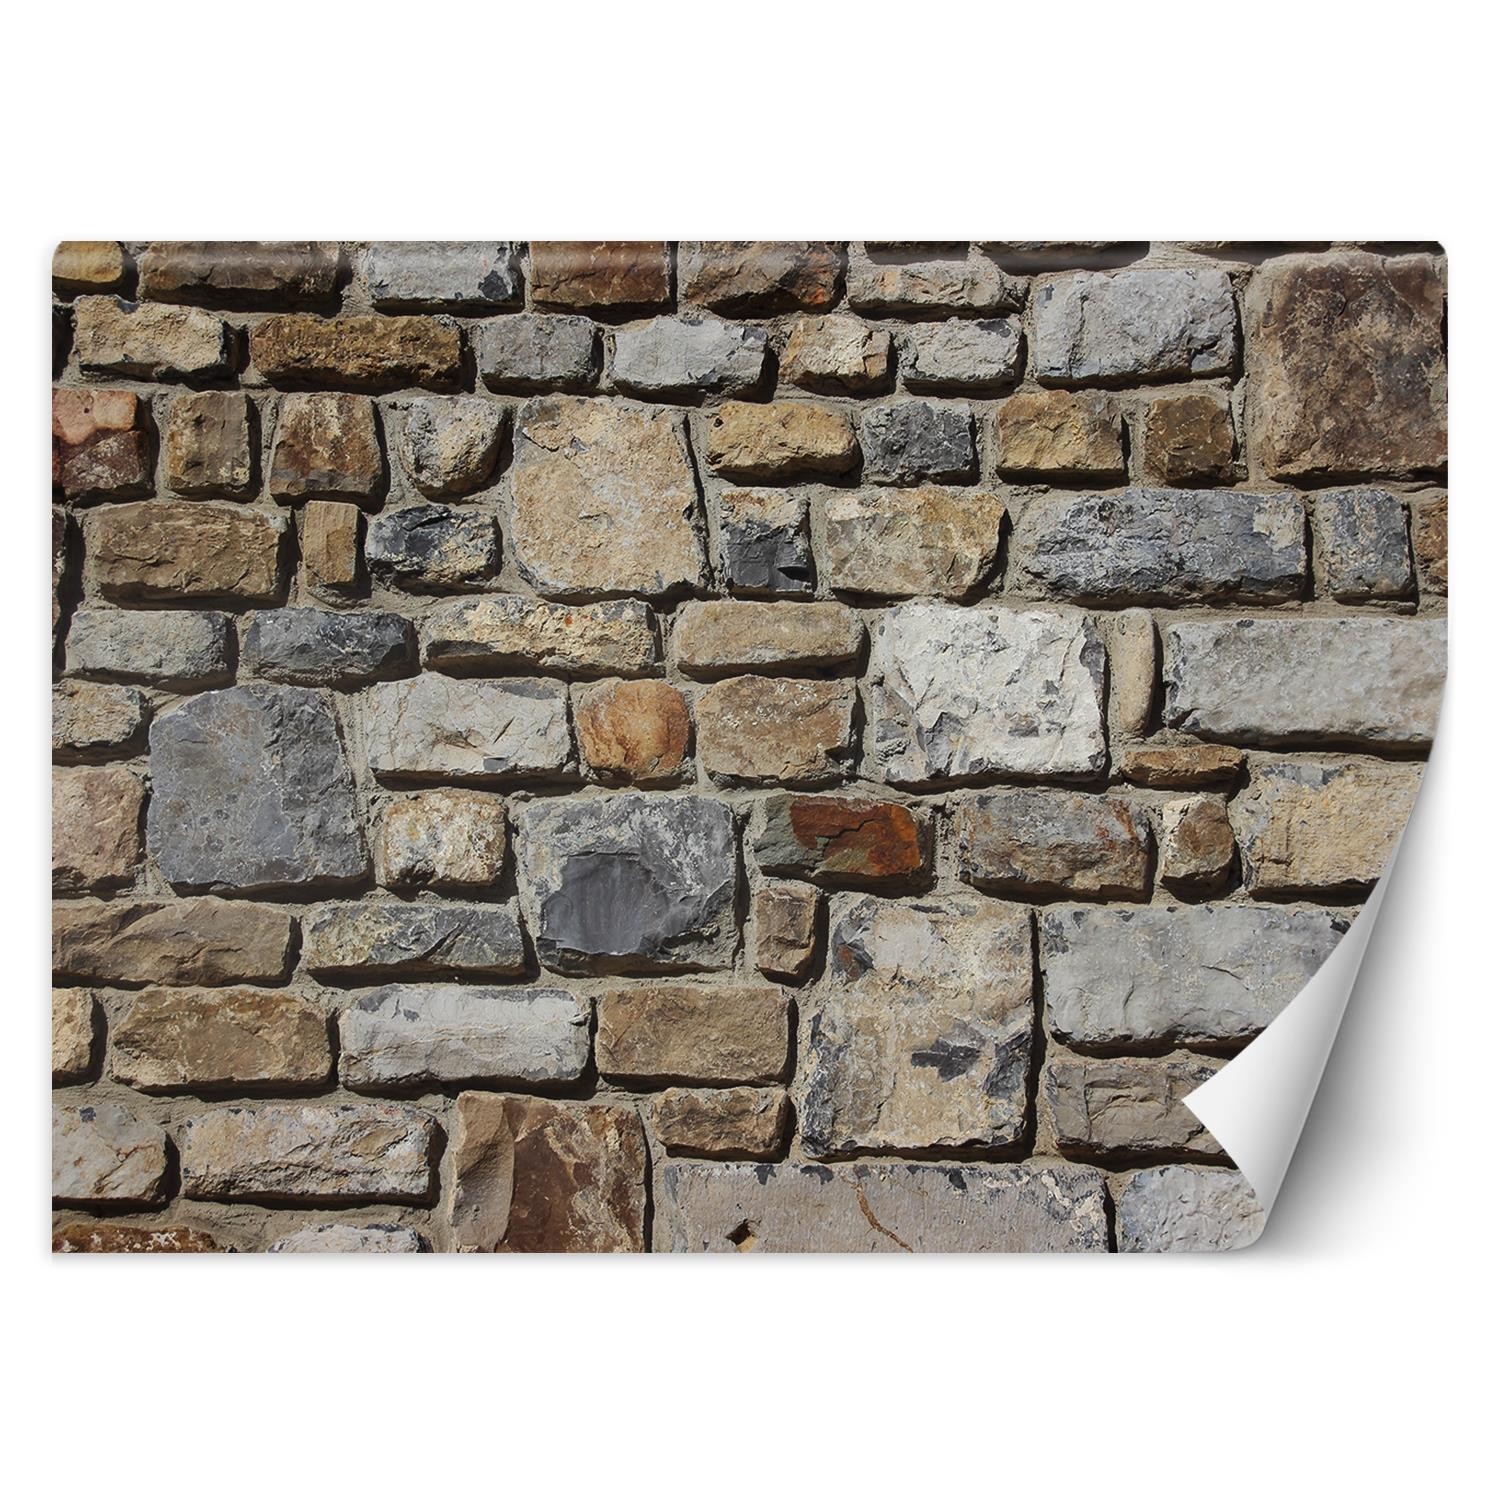 Trend24 – Behang – Stenen Op De Muur – Behangpapier – Behang Woonkamer – Fotobehang – 250x175x2 cm – Incl. behanglijm